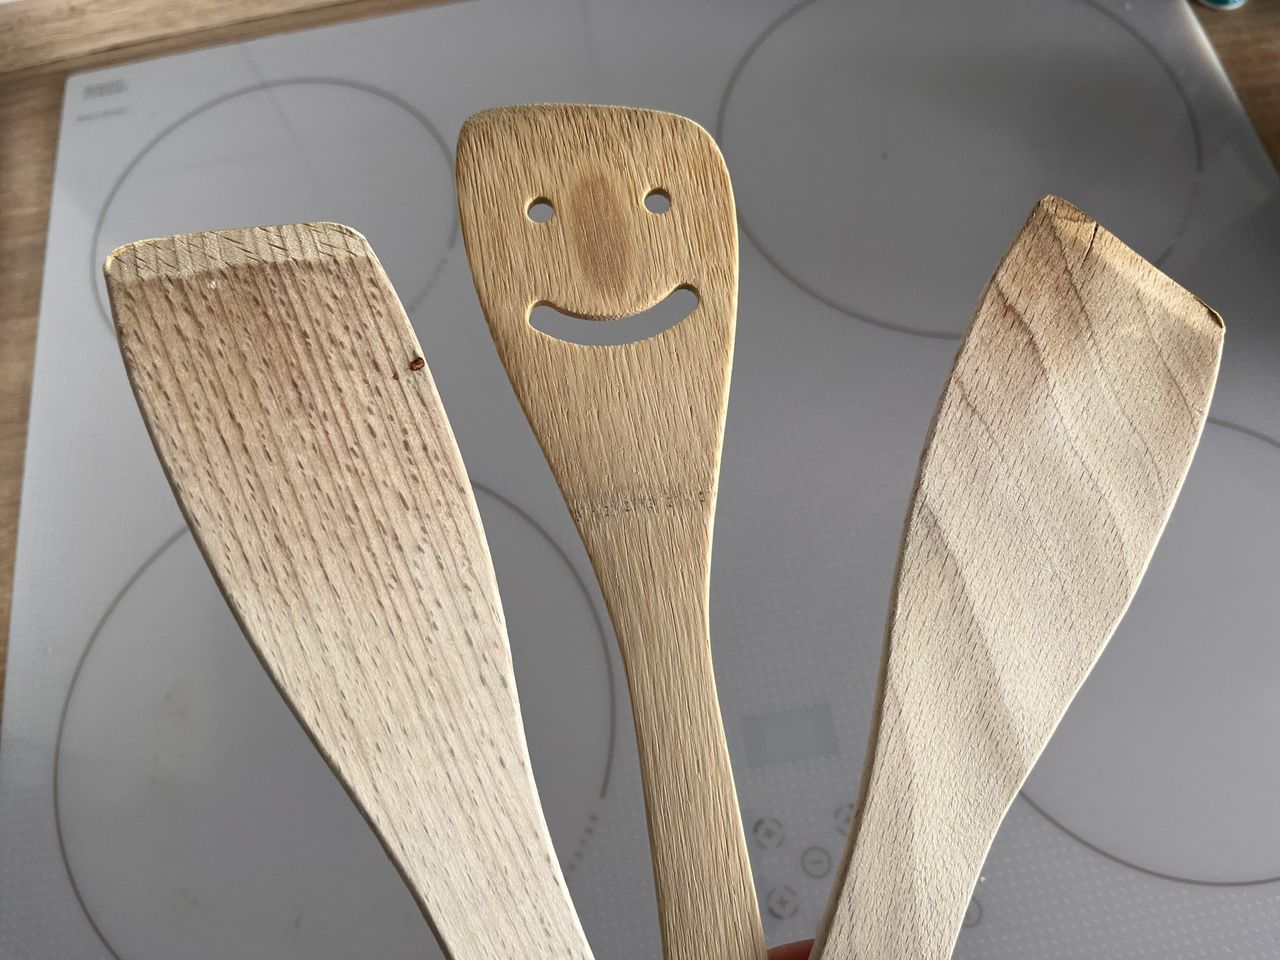 Jak zaimpregnować drewniane łyżki? Fot. Genialne.pl